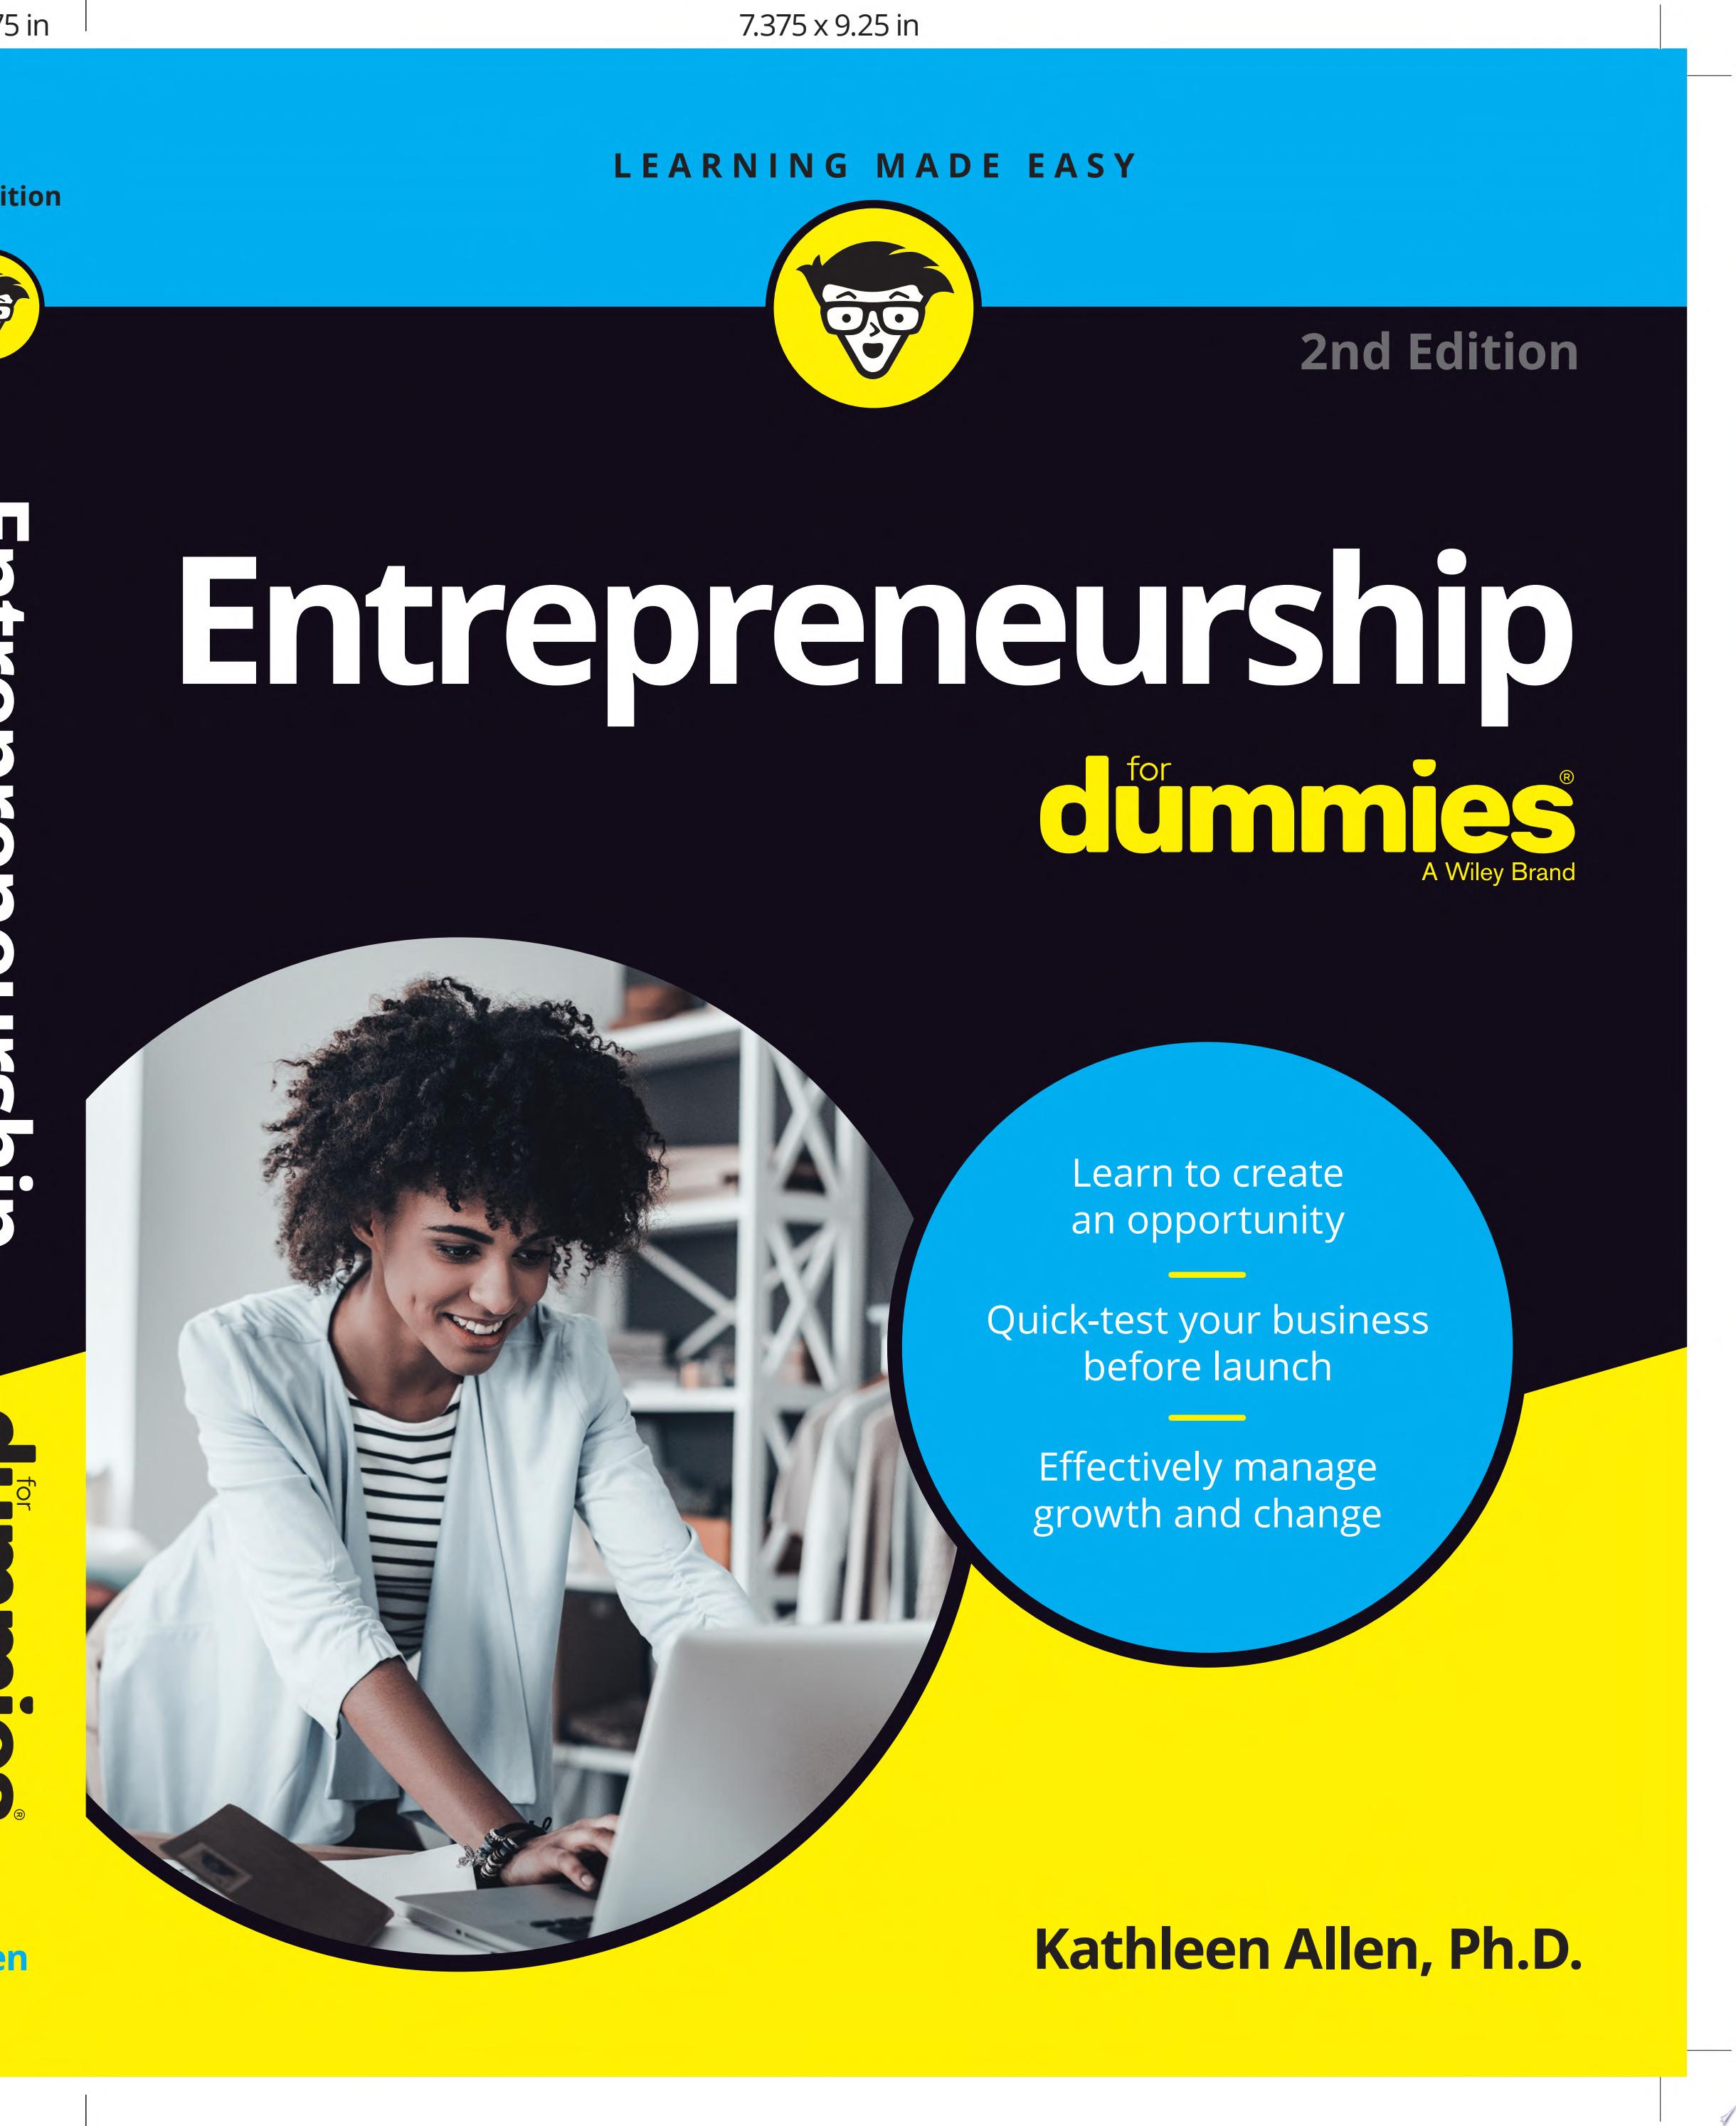 Image for "Entrepreneurship For Dummies"